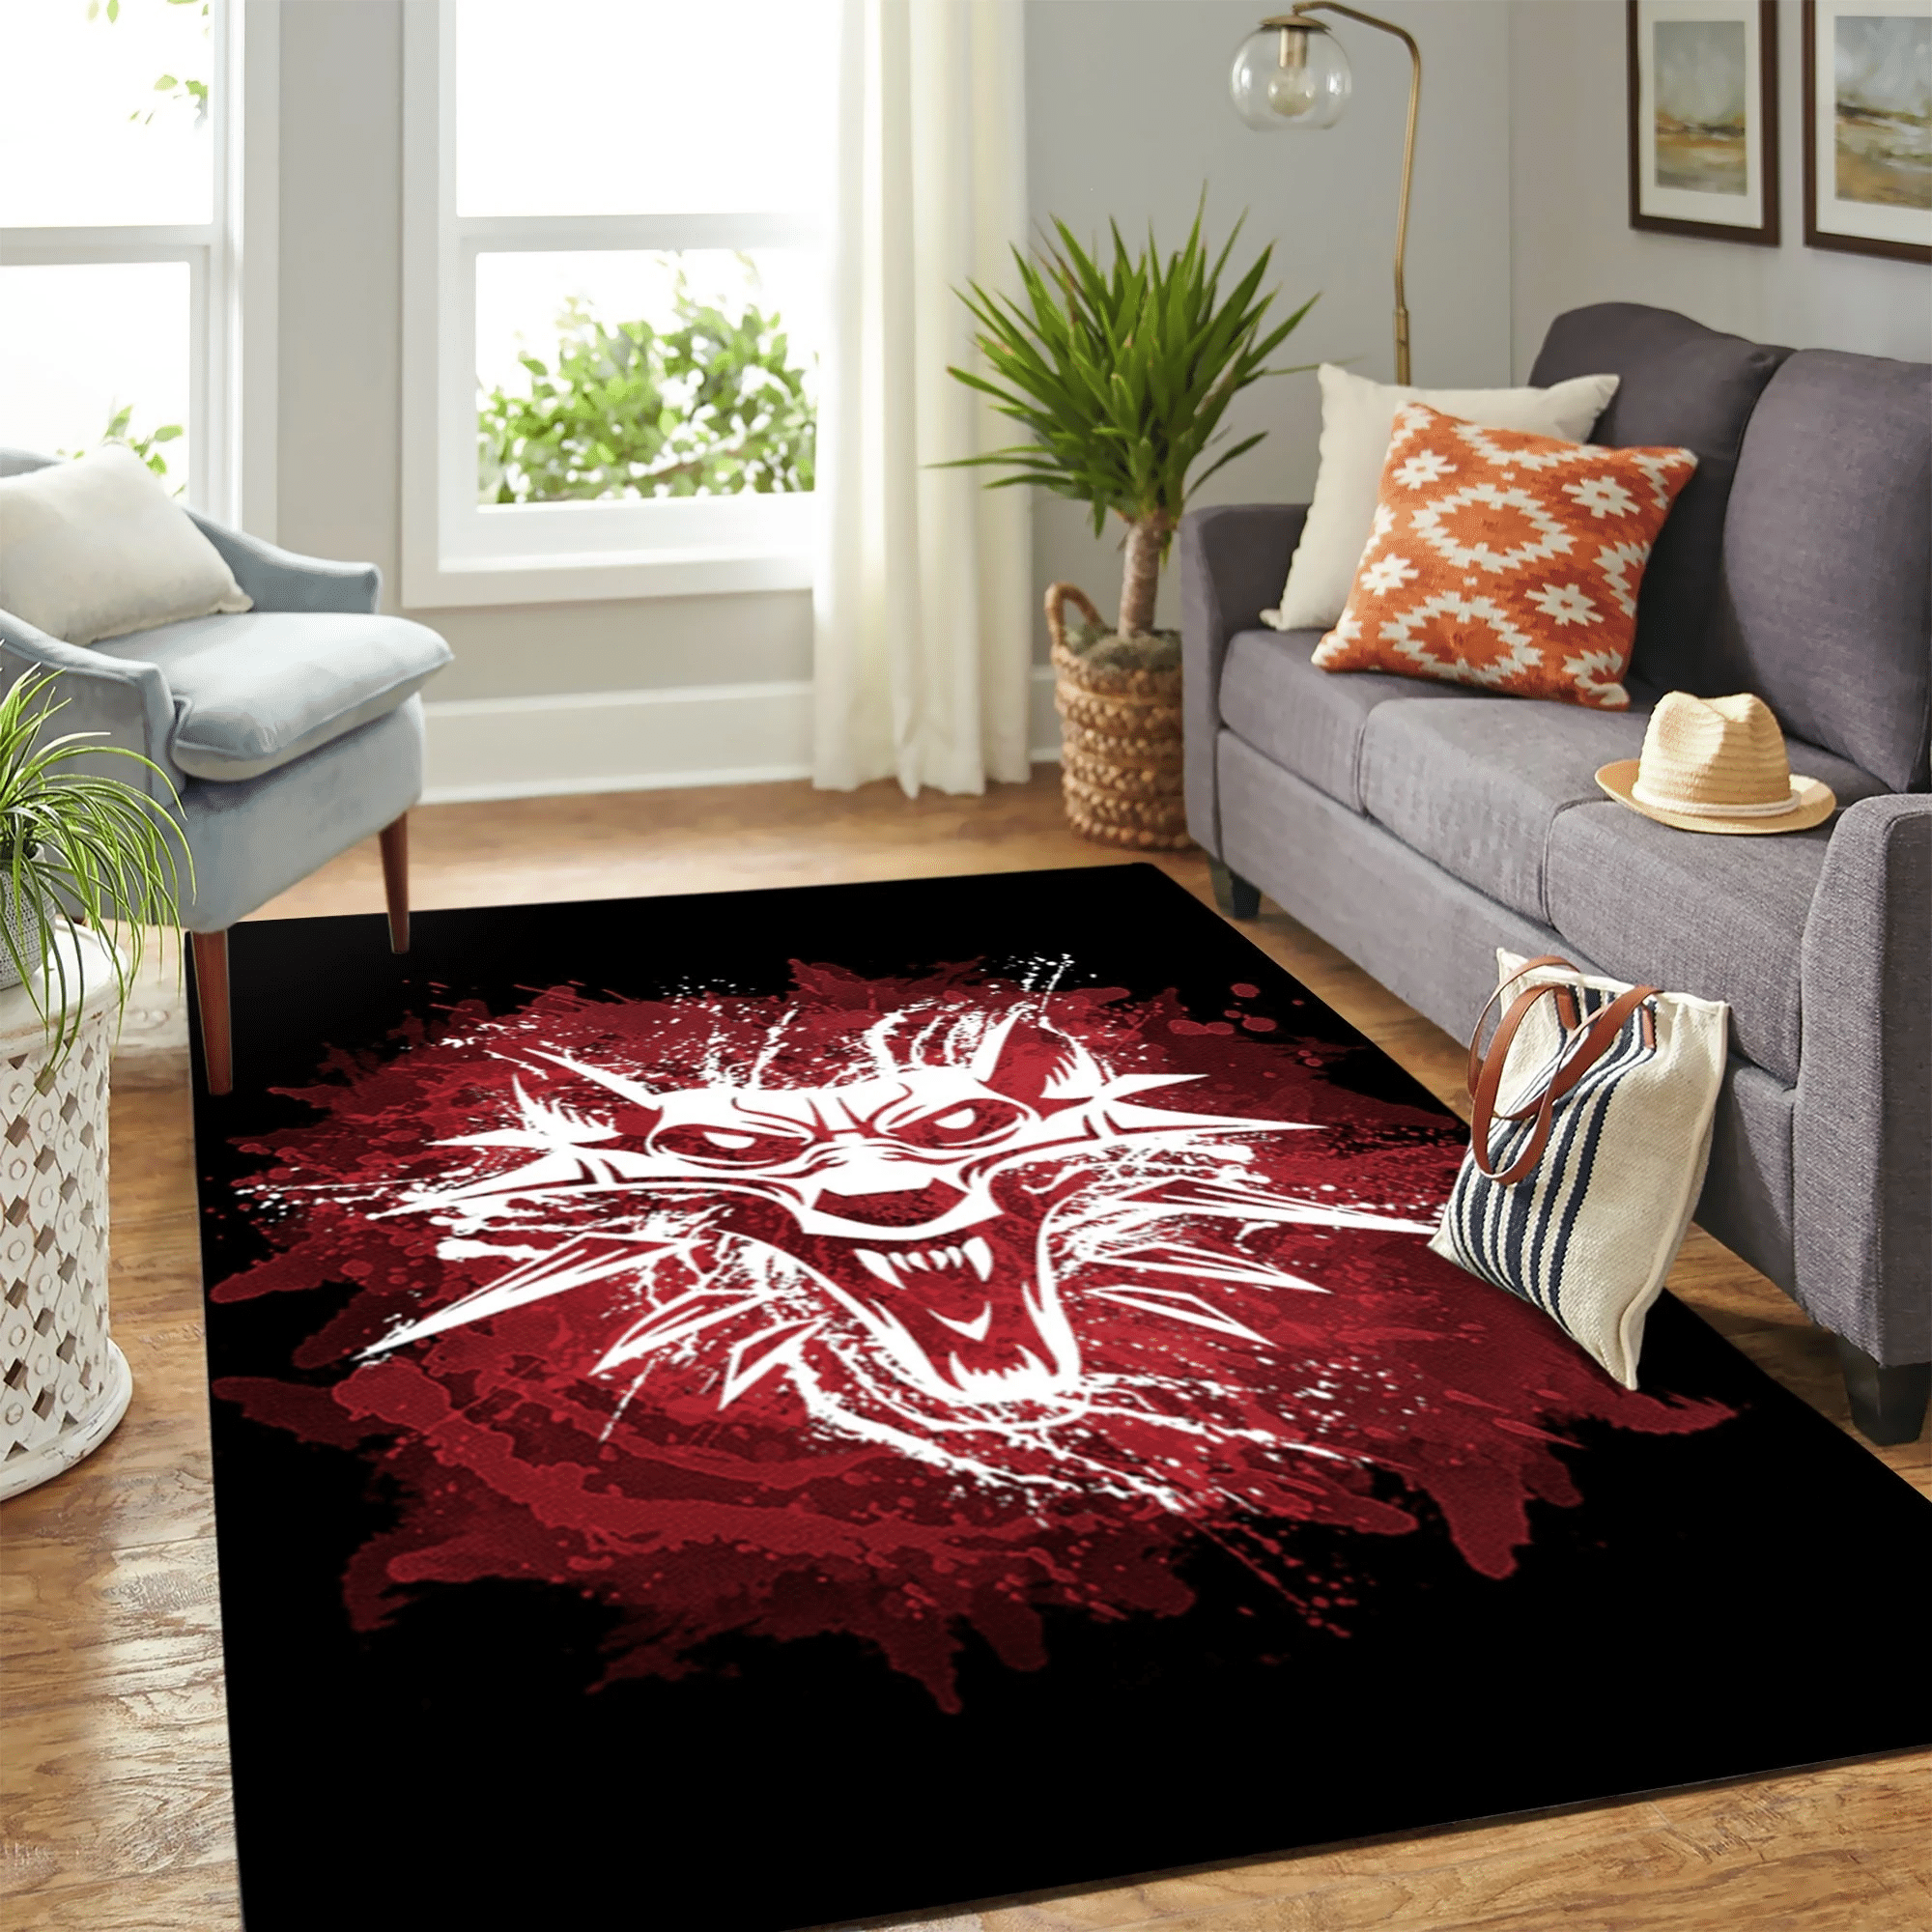 The Witcher Red Wolf Carpet Floor Area Rug Chrismas Gift - Indoor Outdoor Rugs 1